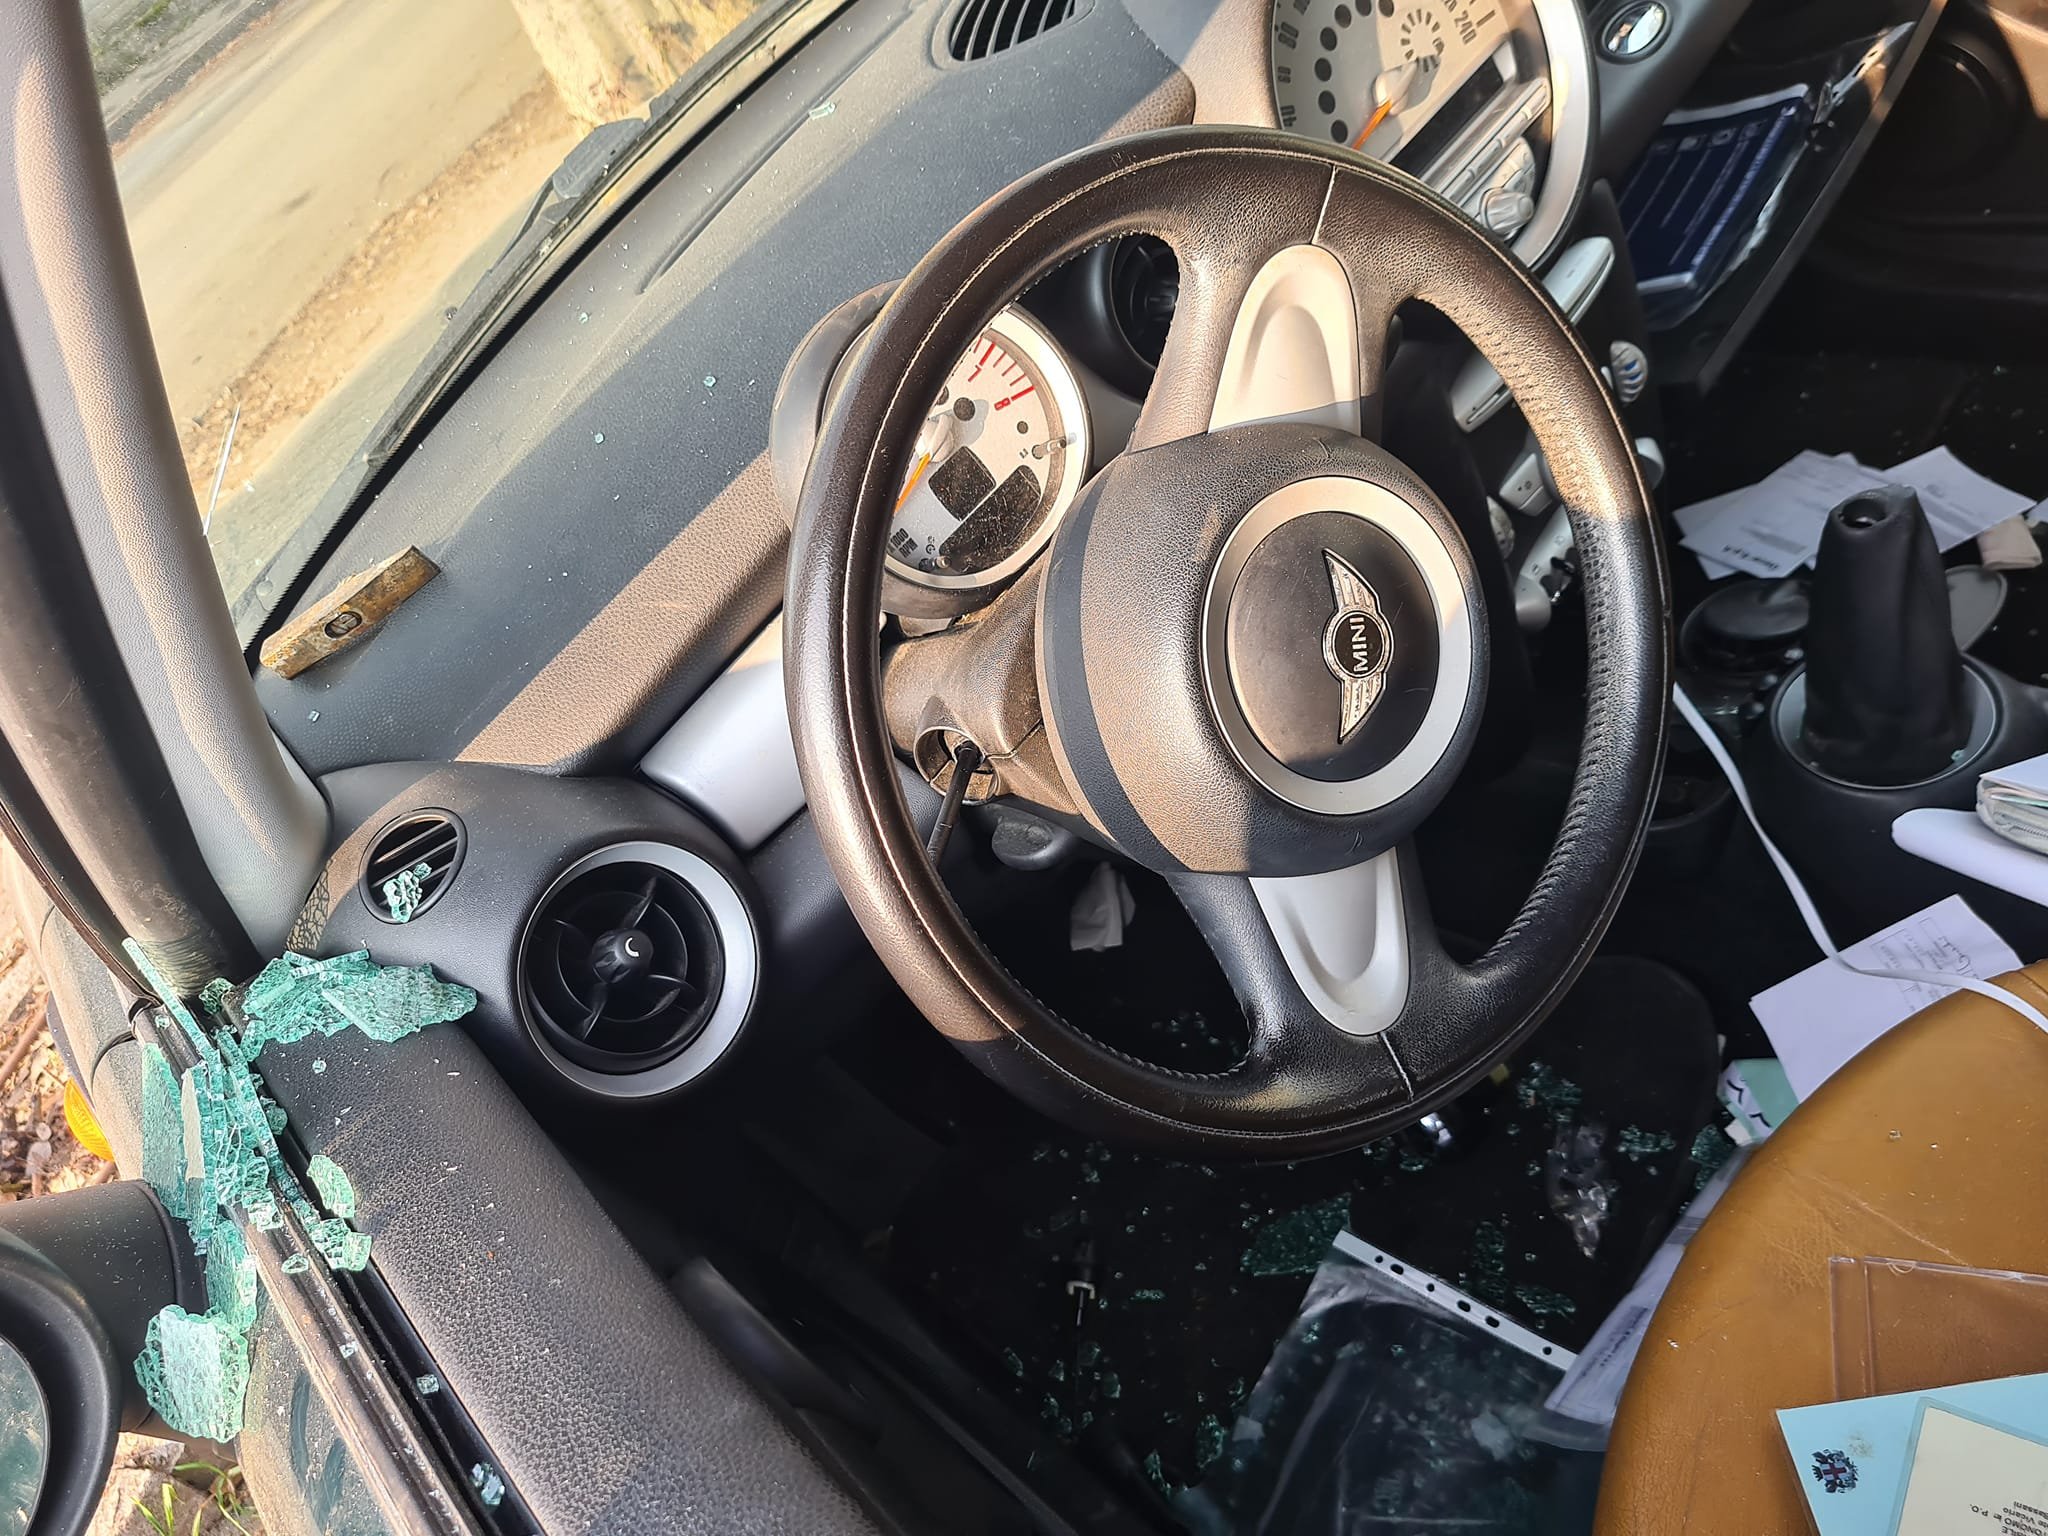 Auto vandalizzata al quartiere Cristo in via Parini: “Oltre ai finestrini distrutto anche l’interno”